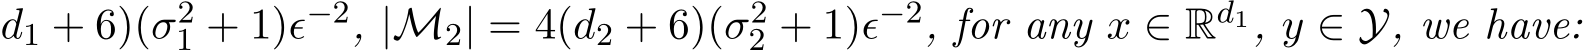 d1 + 6)(σ21 + 1)ϵ−2, |M2| = 4(d2 + 6)(σ22 + 1)ϵ−2, for any x ∈ Rd1, y ∈ Y, we have: